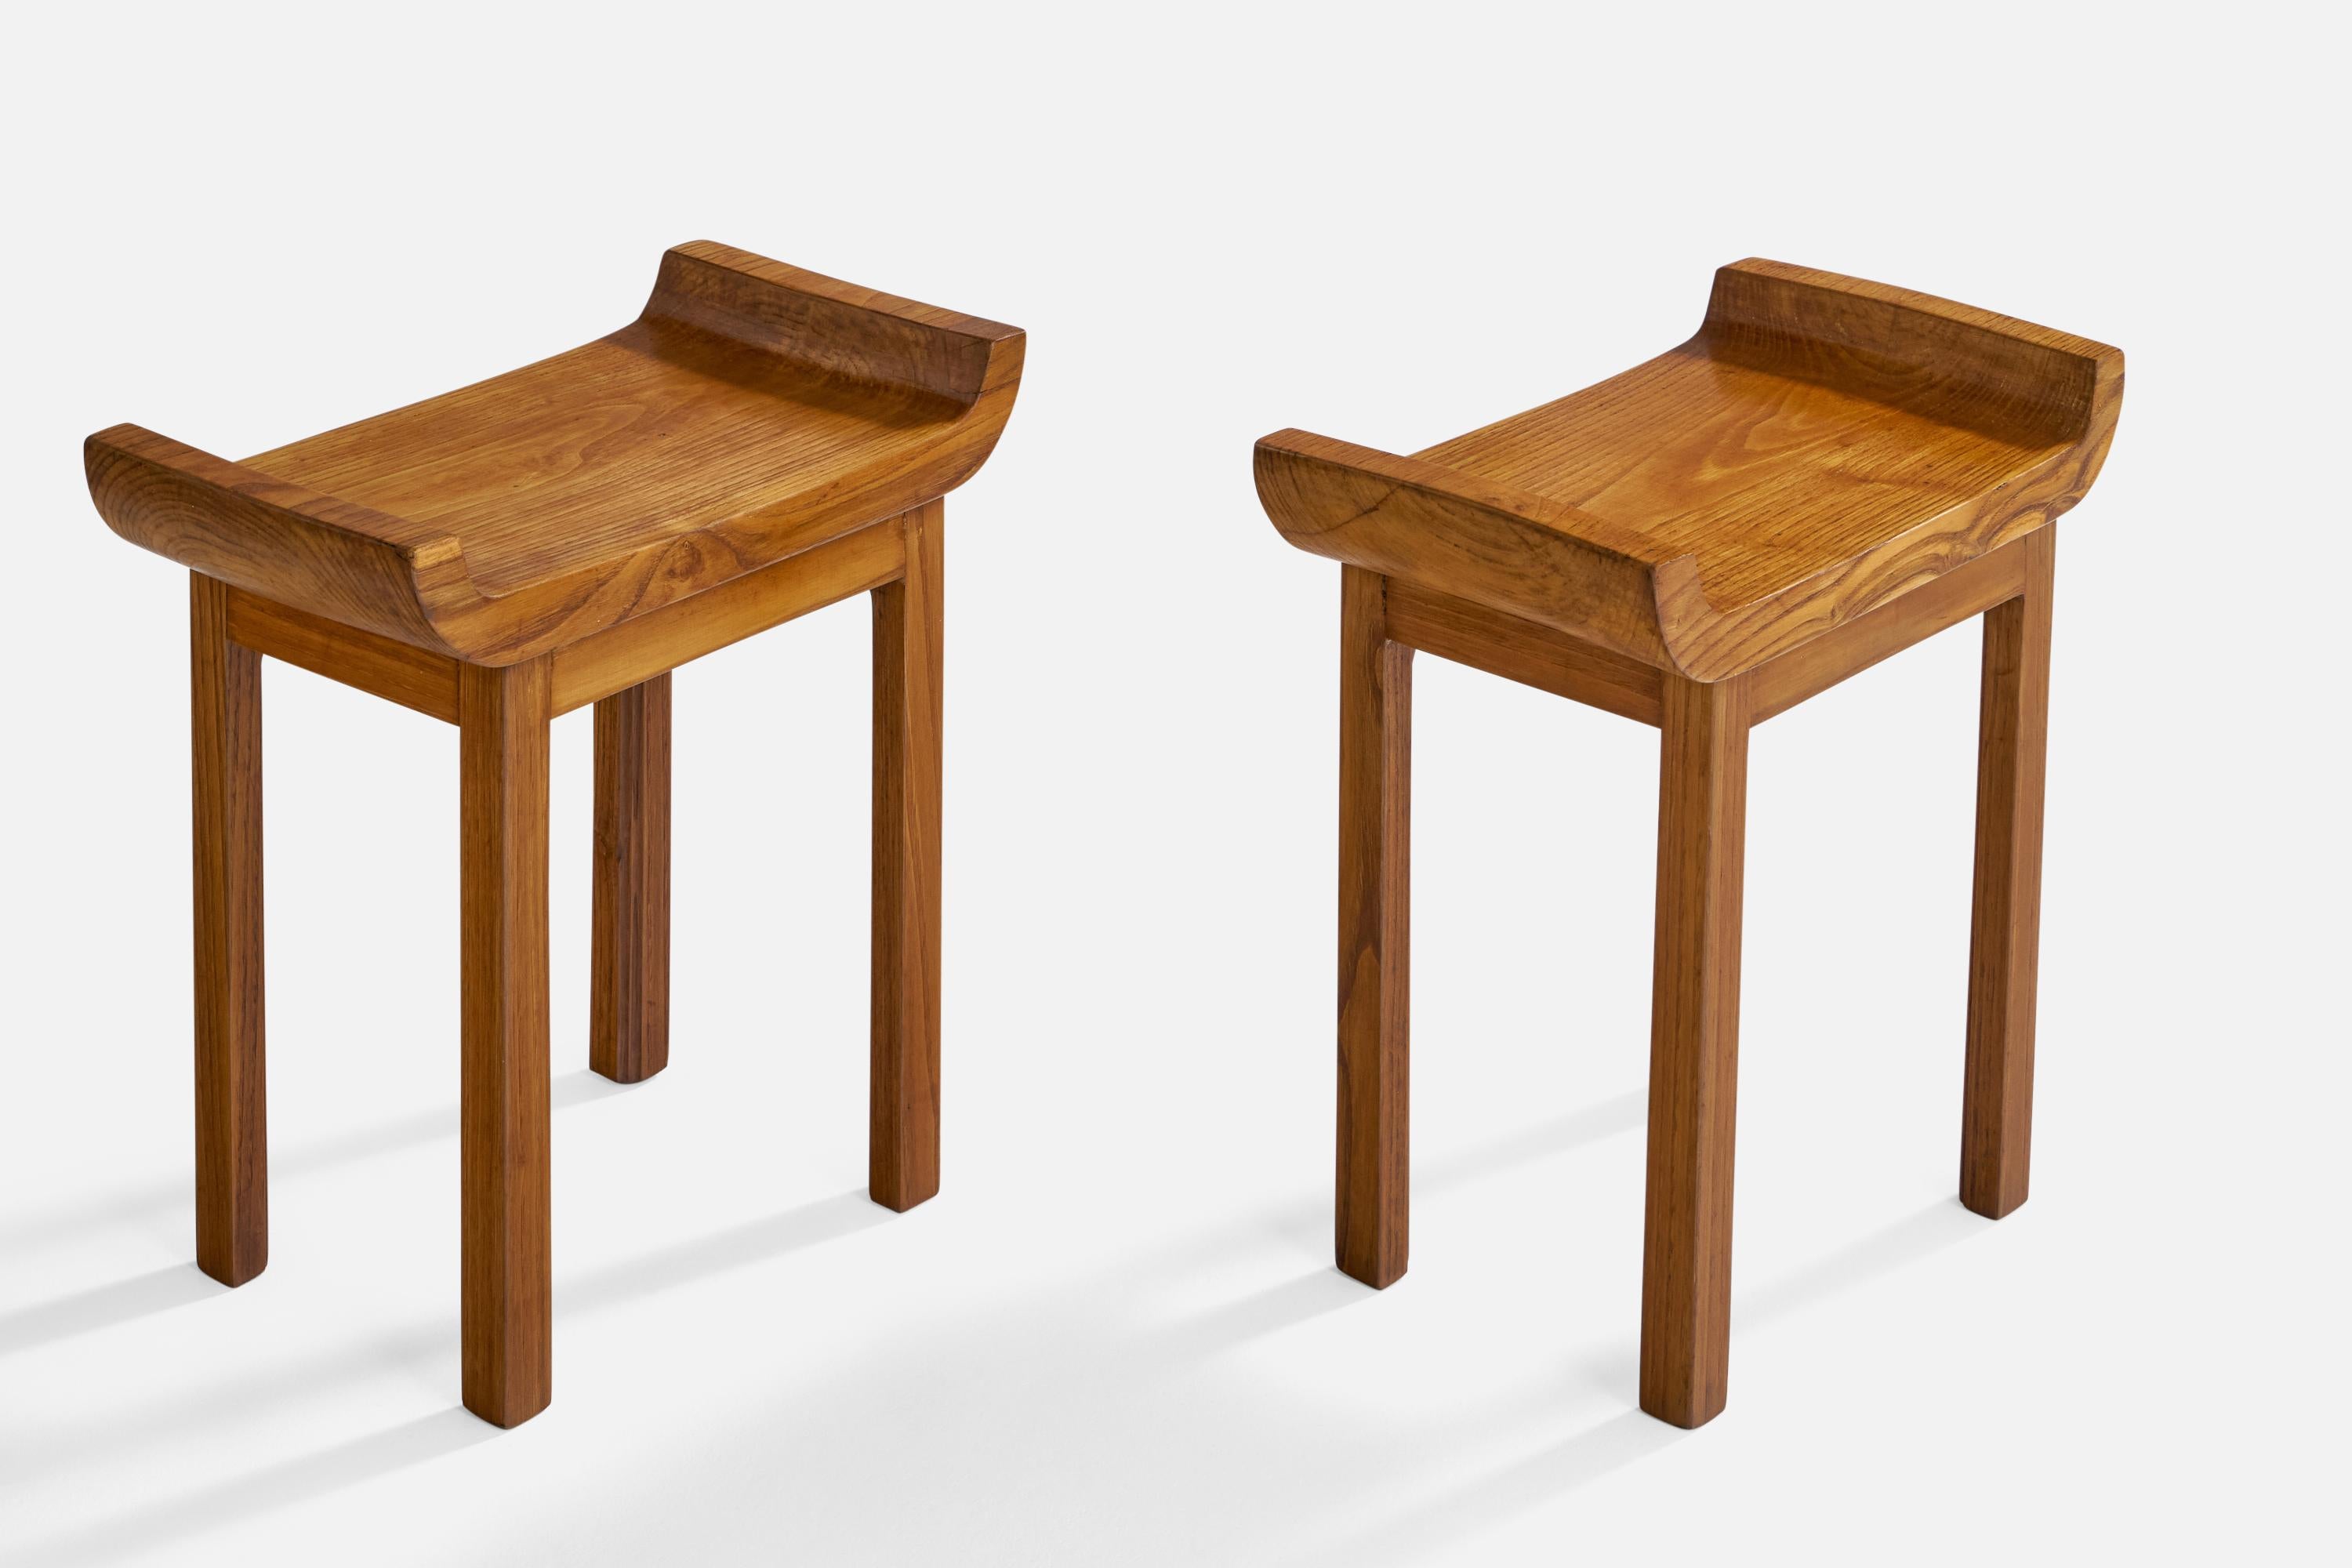 Ein Paar Hocker aus Nussbaumholz, entworfen und hergestellt in Italien, ca. 1930er Jahre.

Sitzhöhe: 15.75